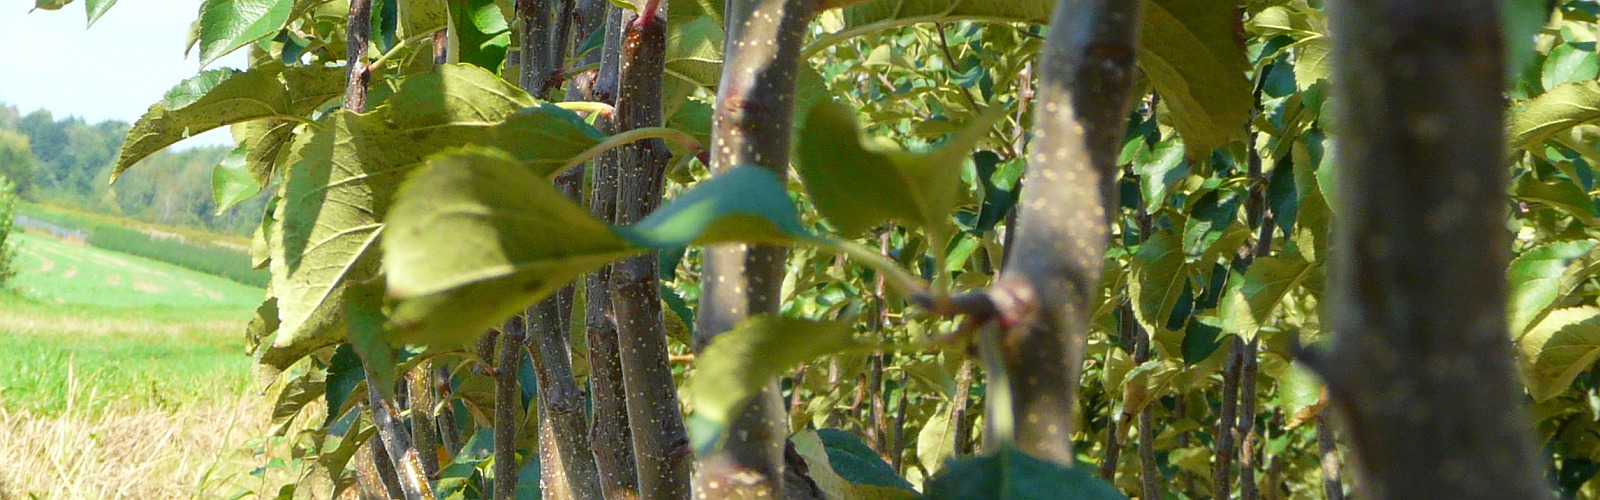 Plantskola frukt fruktträd plantor äpple päron plommon körsbär Polen